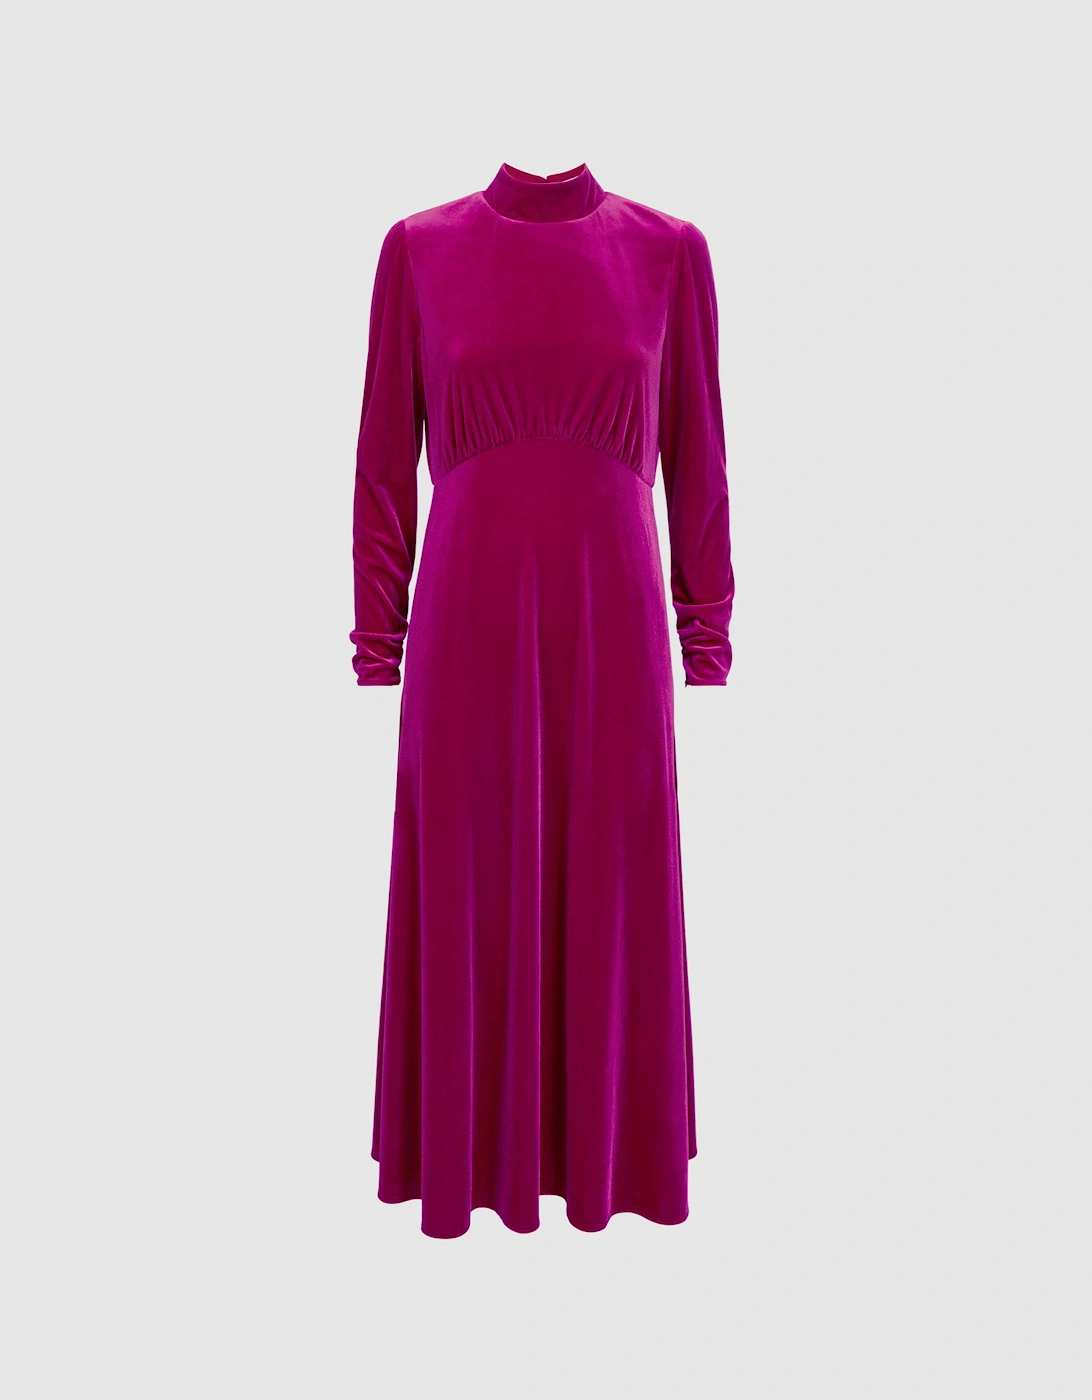 Florere Velvet Midi Dress, 2 of 1